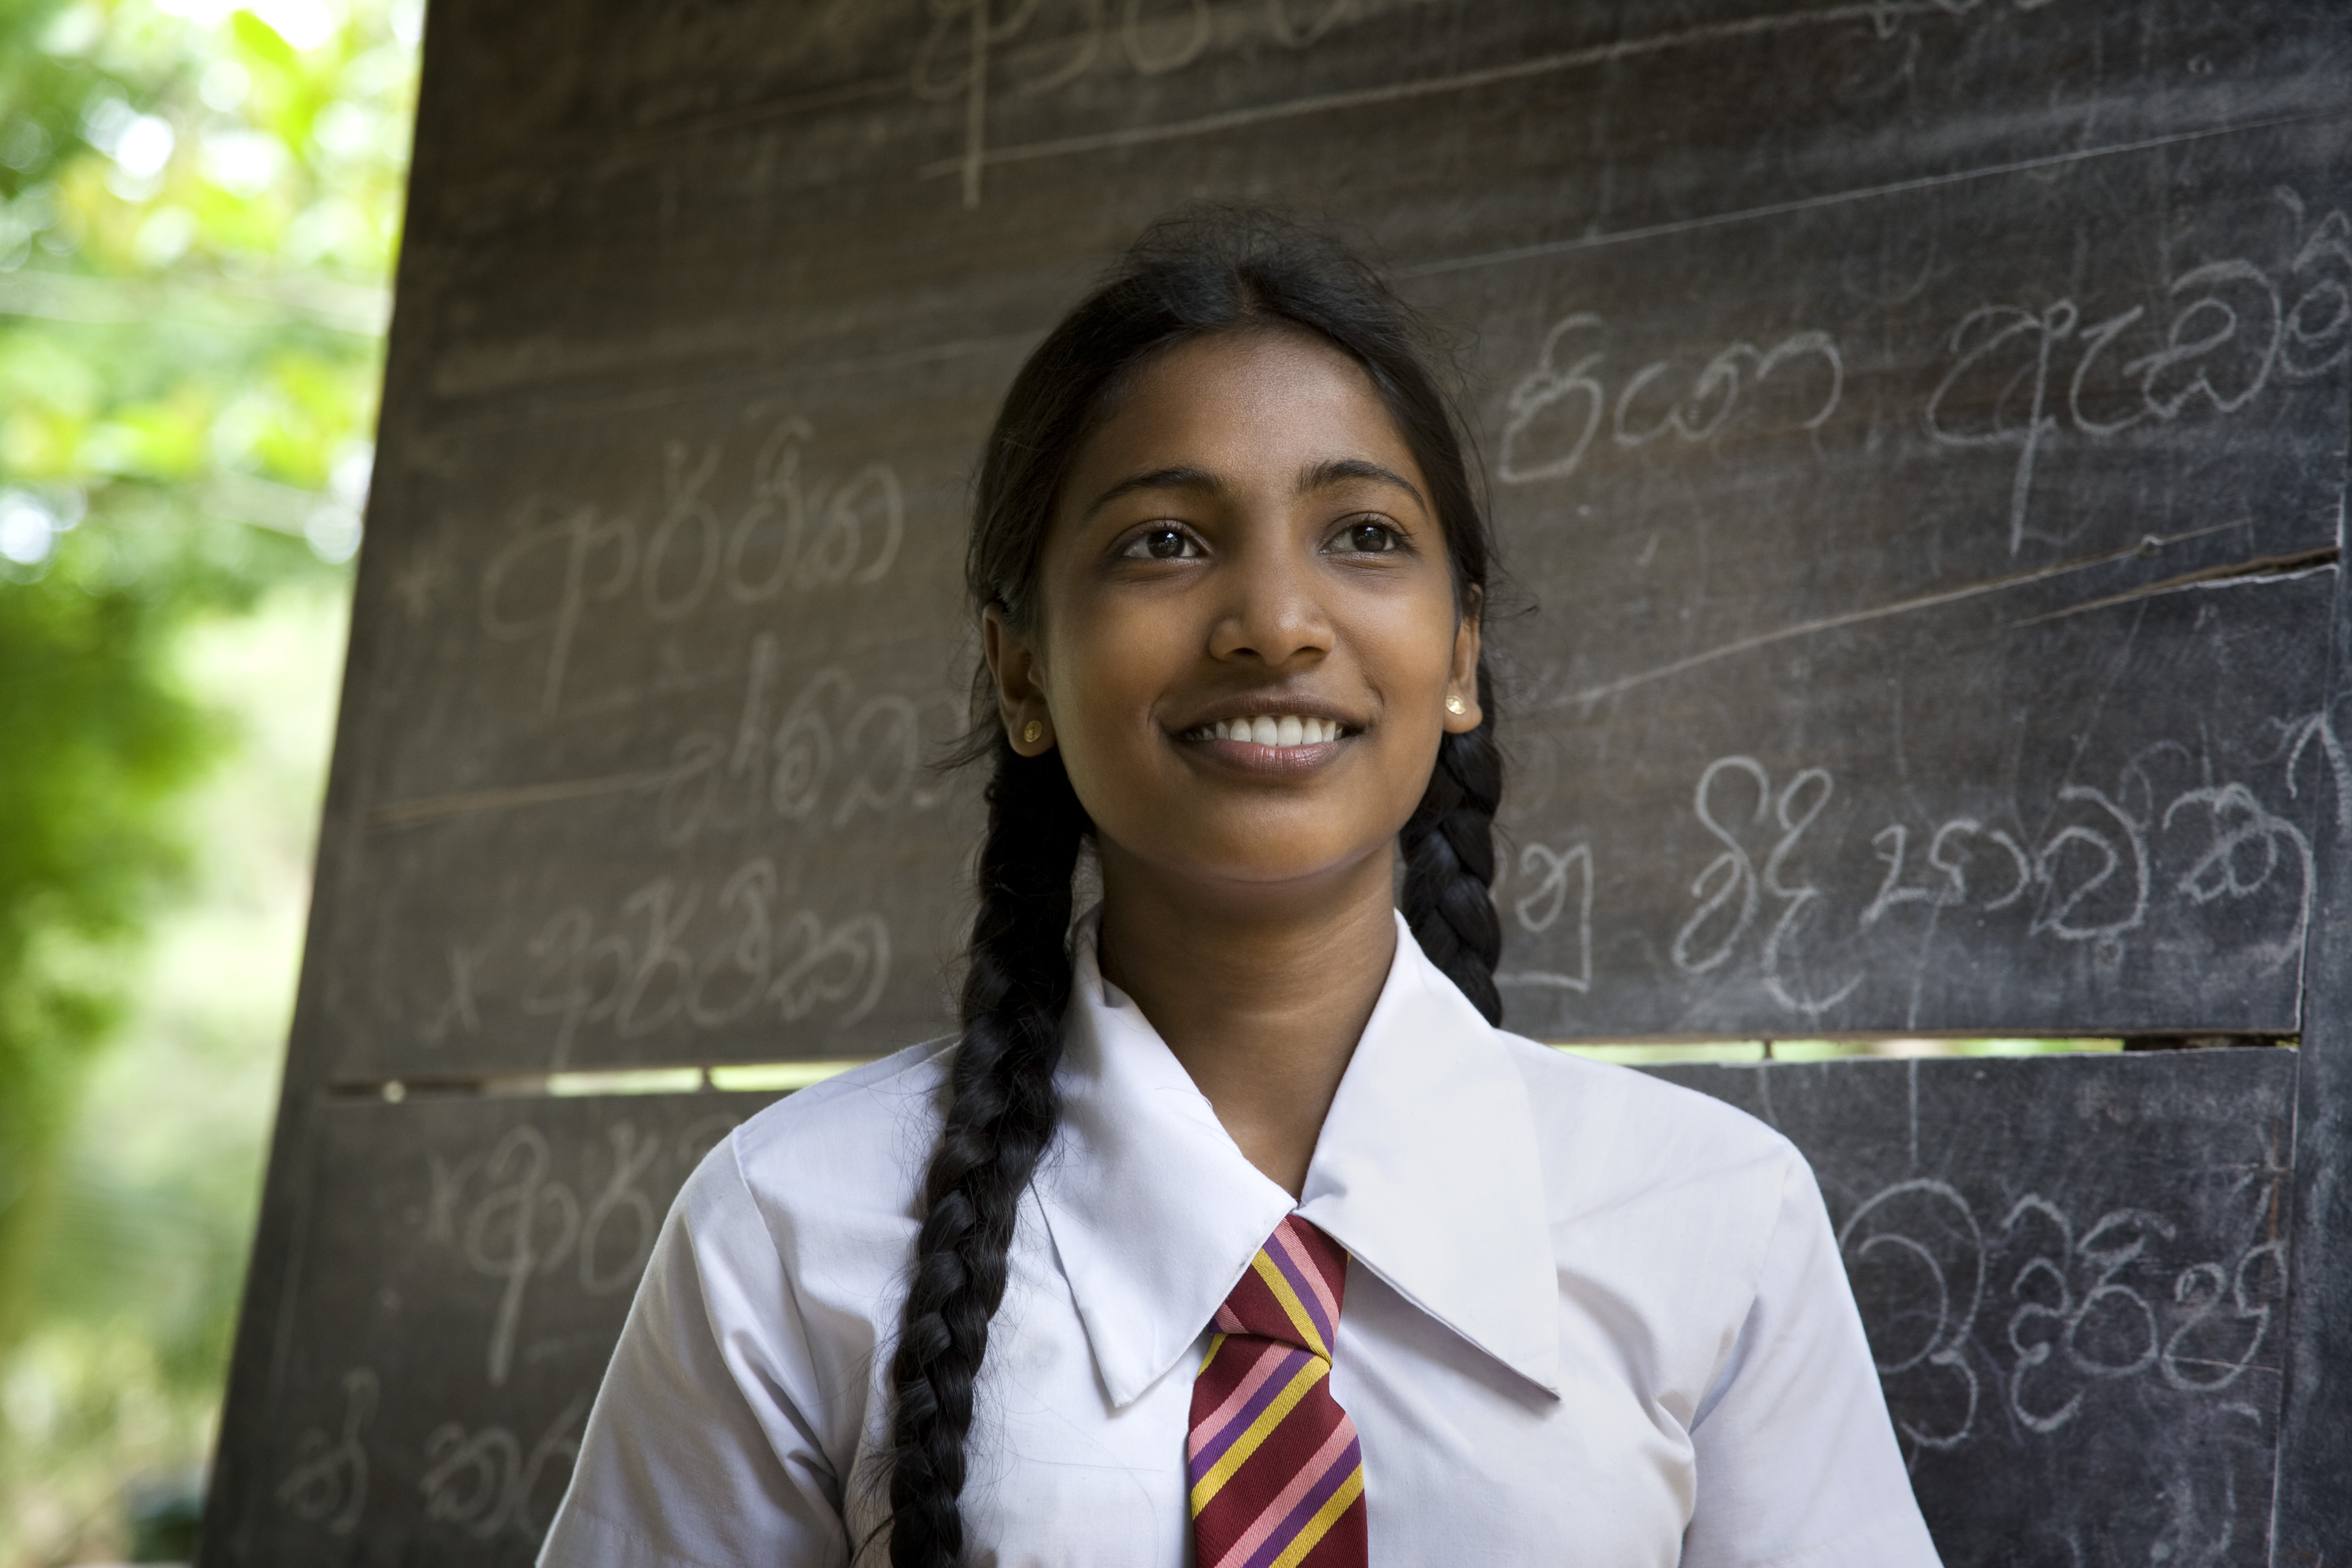 Une étudiante sud-asiatique aux cheveux longs | Source : Getty Images